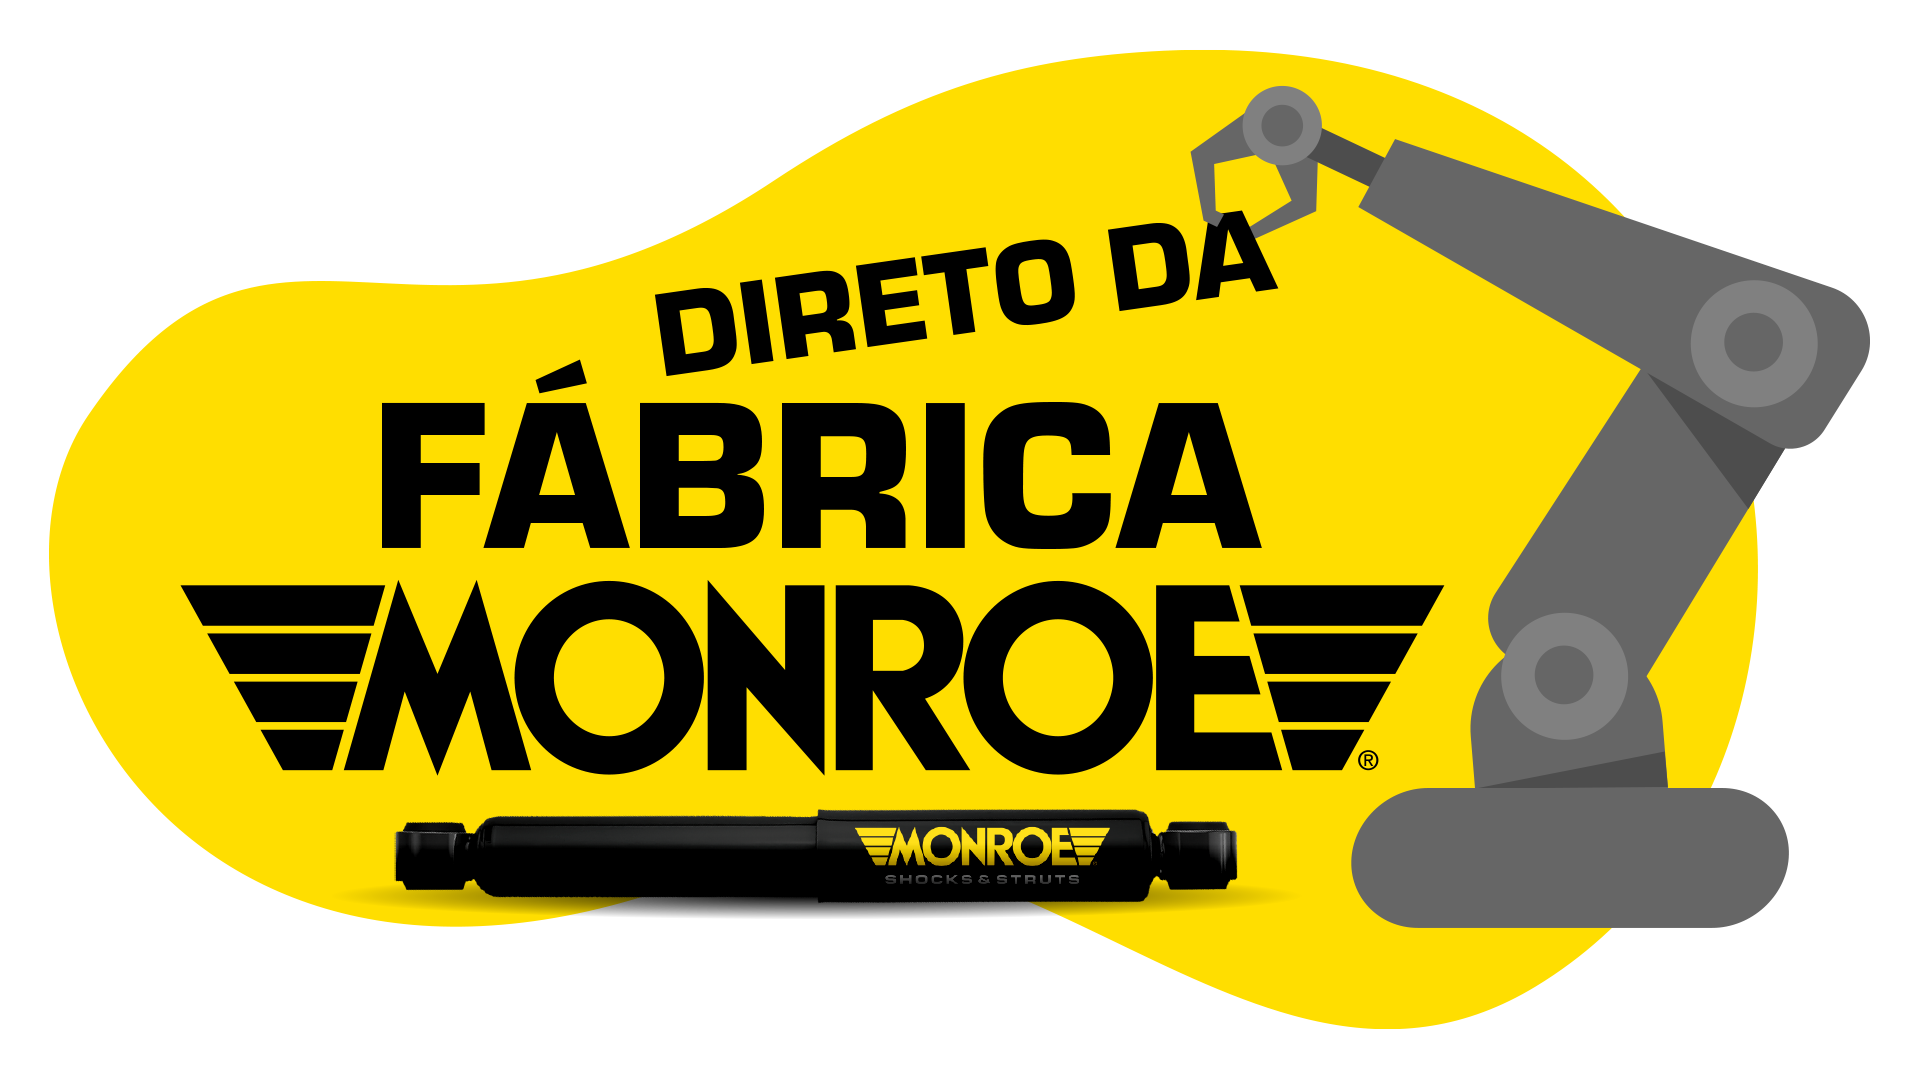 Monroe apresenta a série “Direto da Fábrica Monroe”, com material tutorial para mecânicos